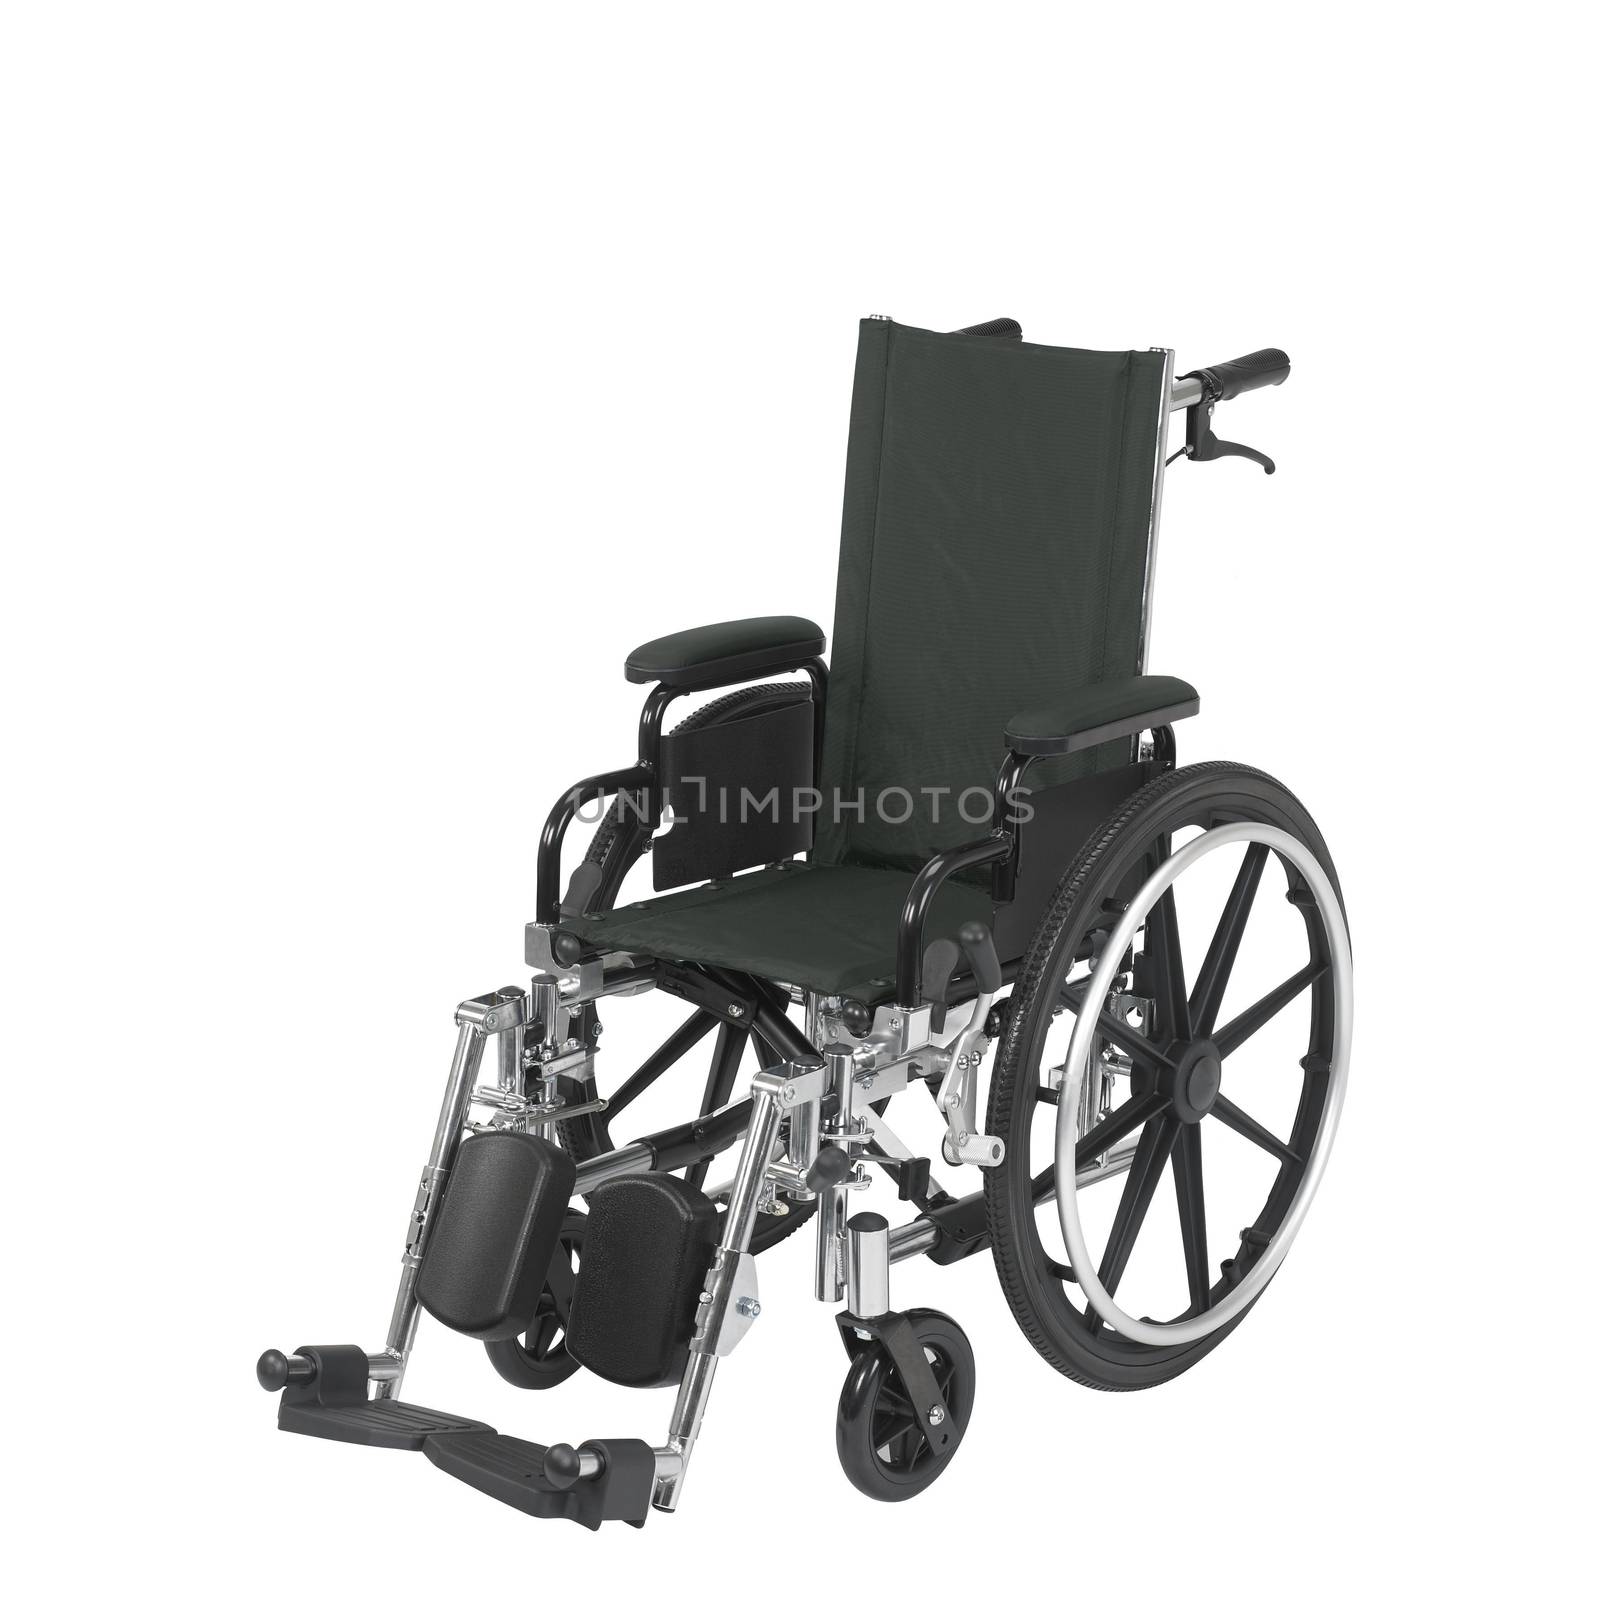 wheelchair under the white background